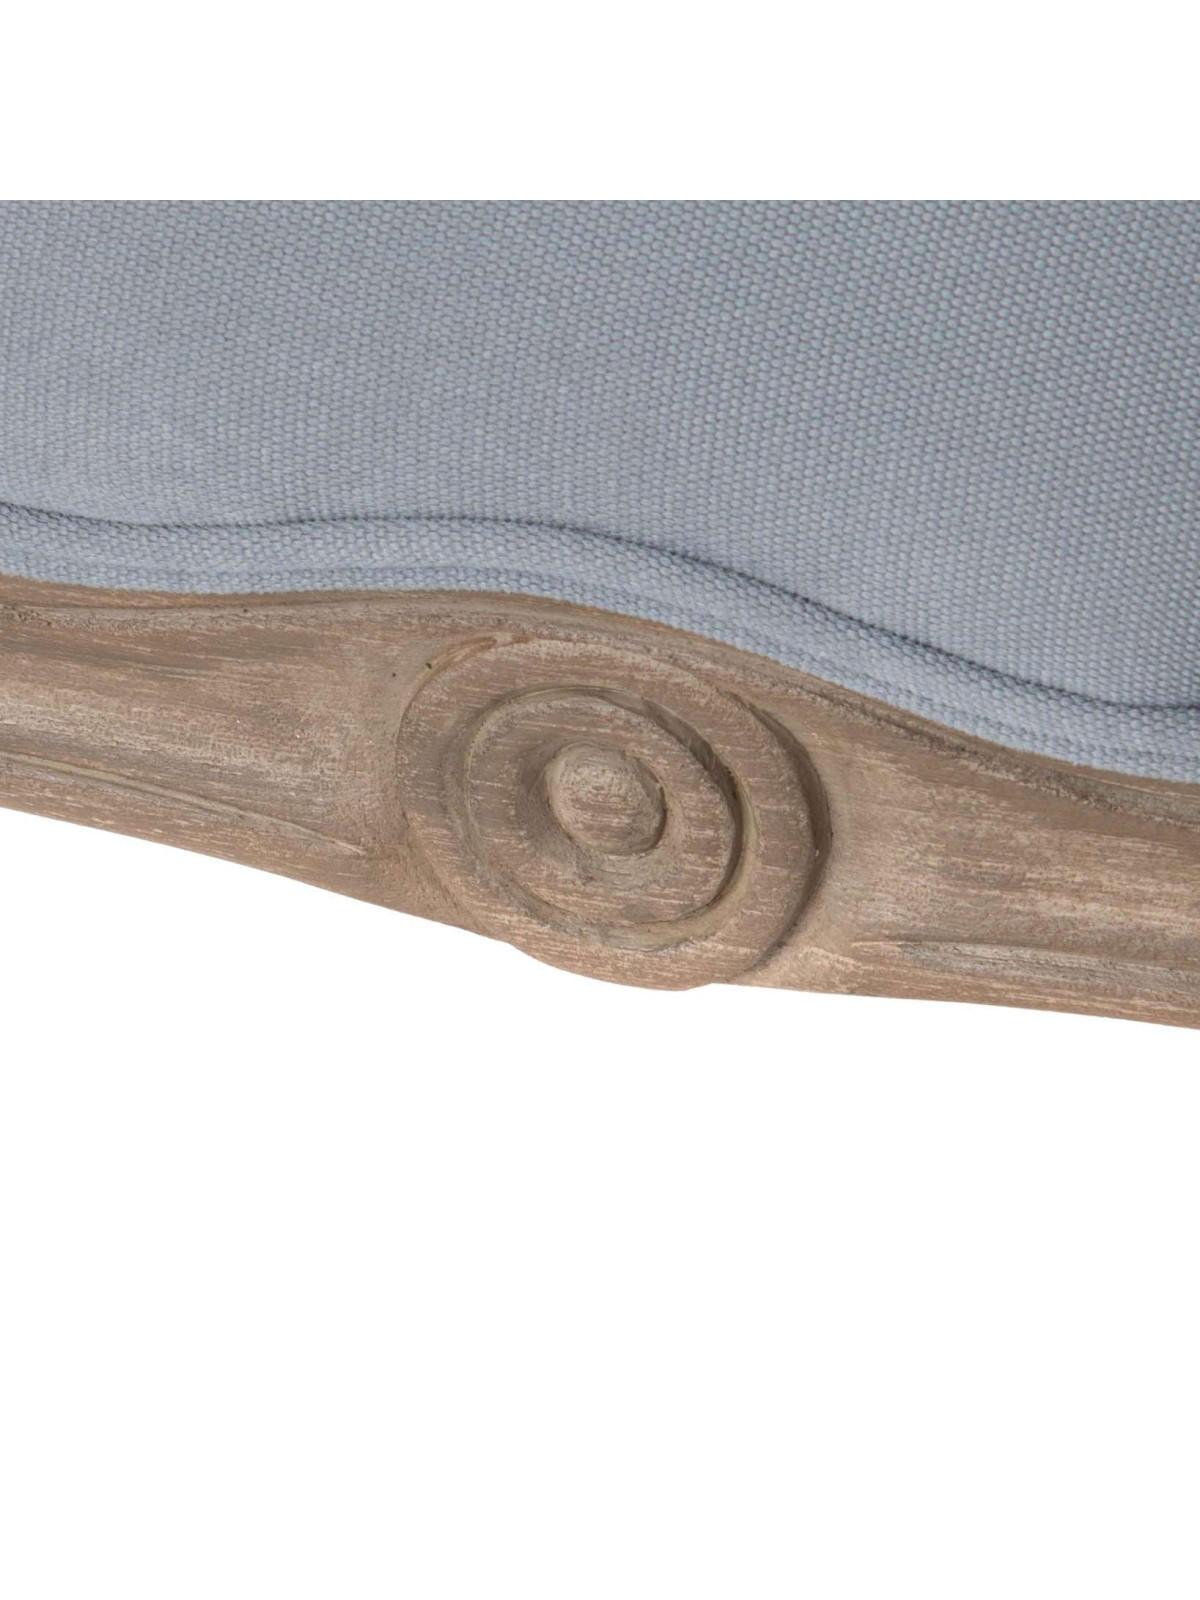 Fauteuil crapaud confortable en tissu gris clair - Souffle d